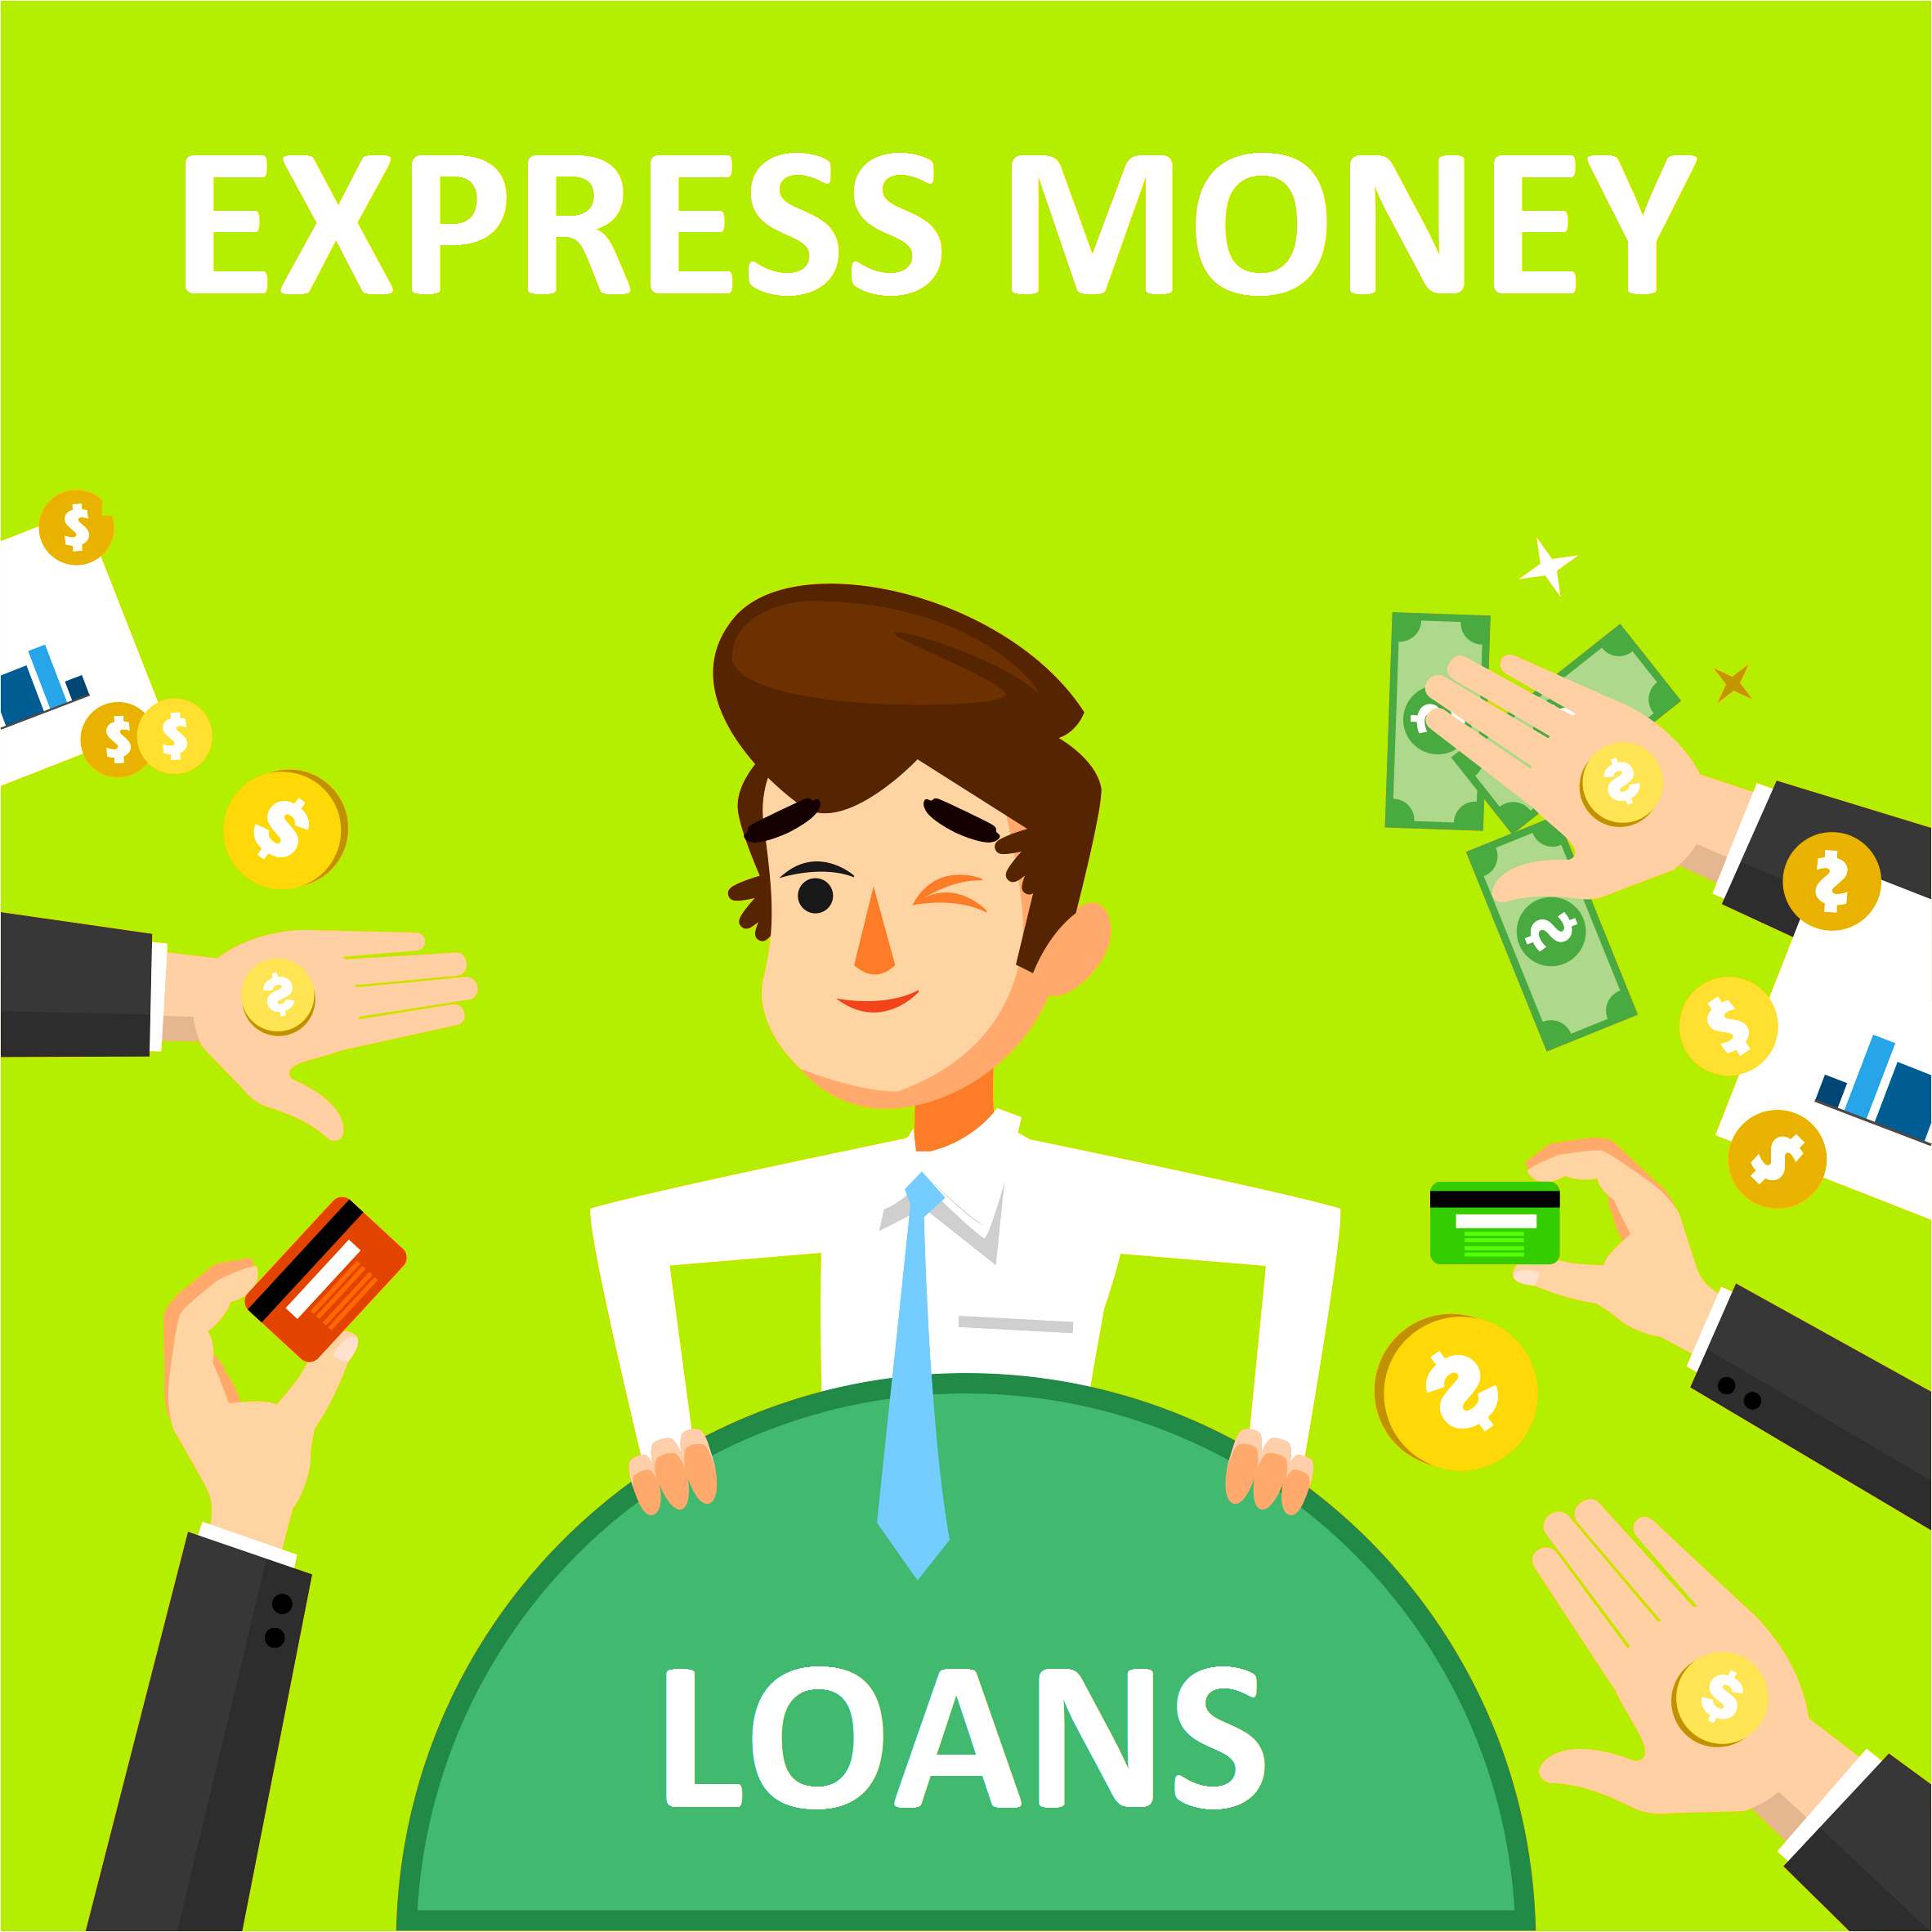 Express Money Loans